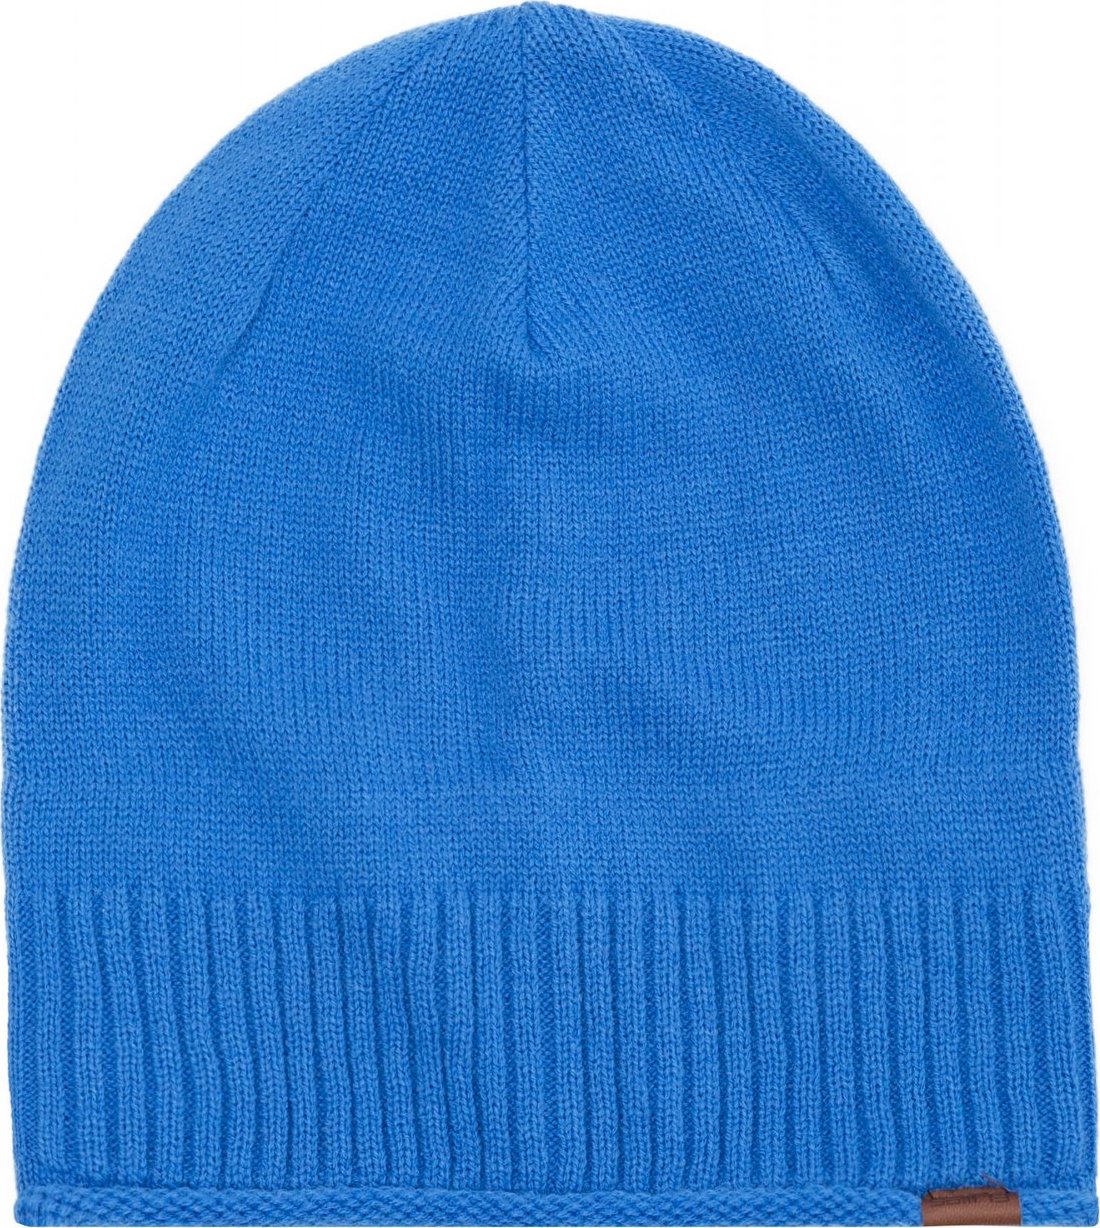 Pánská čepice SAM 73 ellery modrá Barva: Modrá